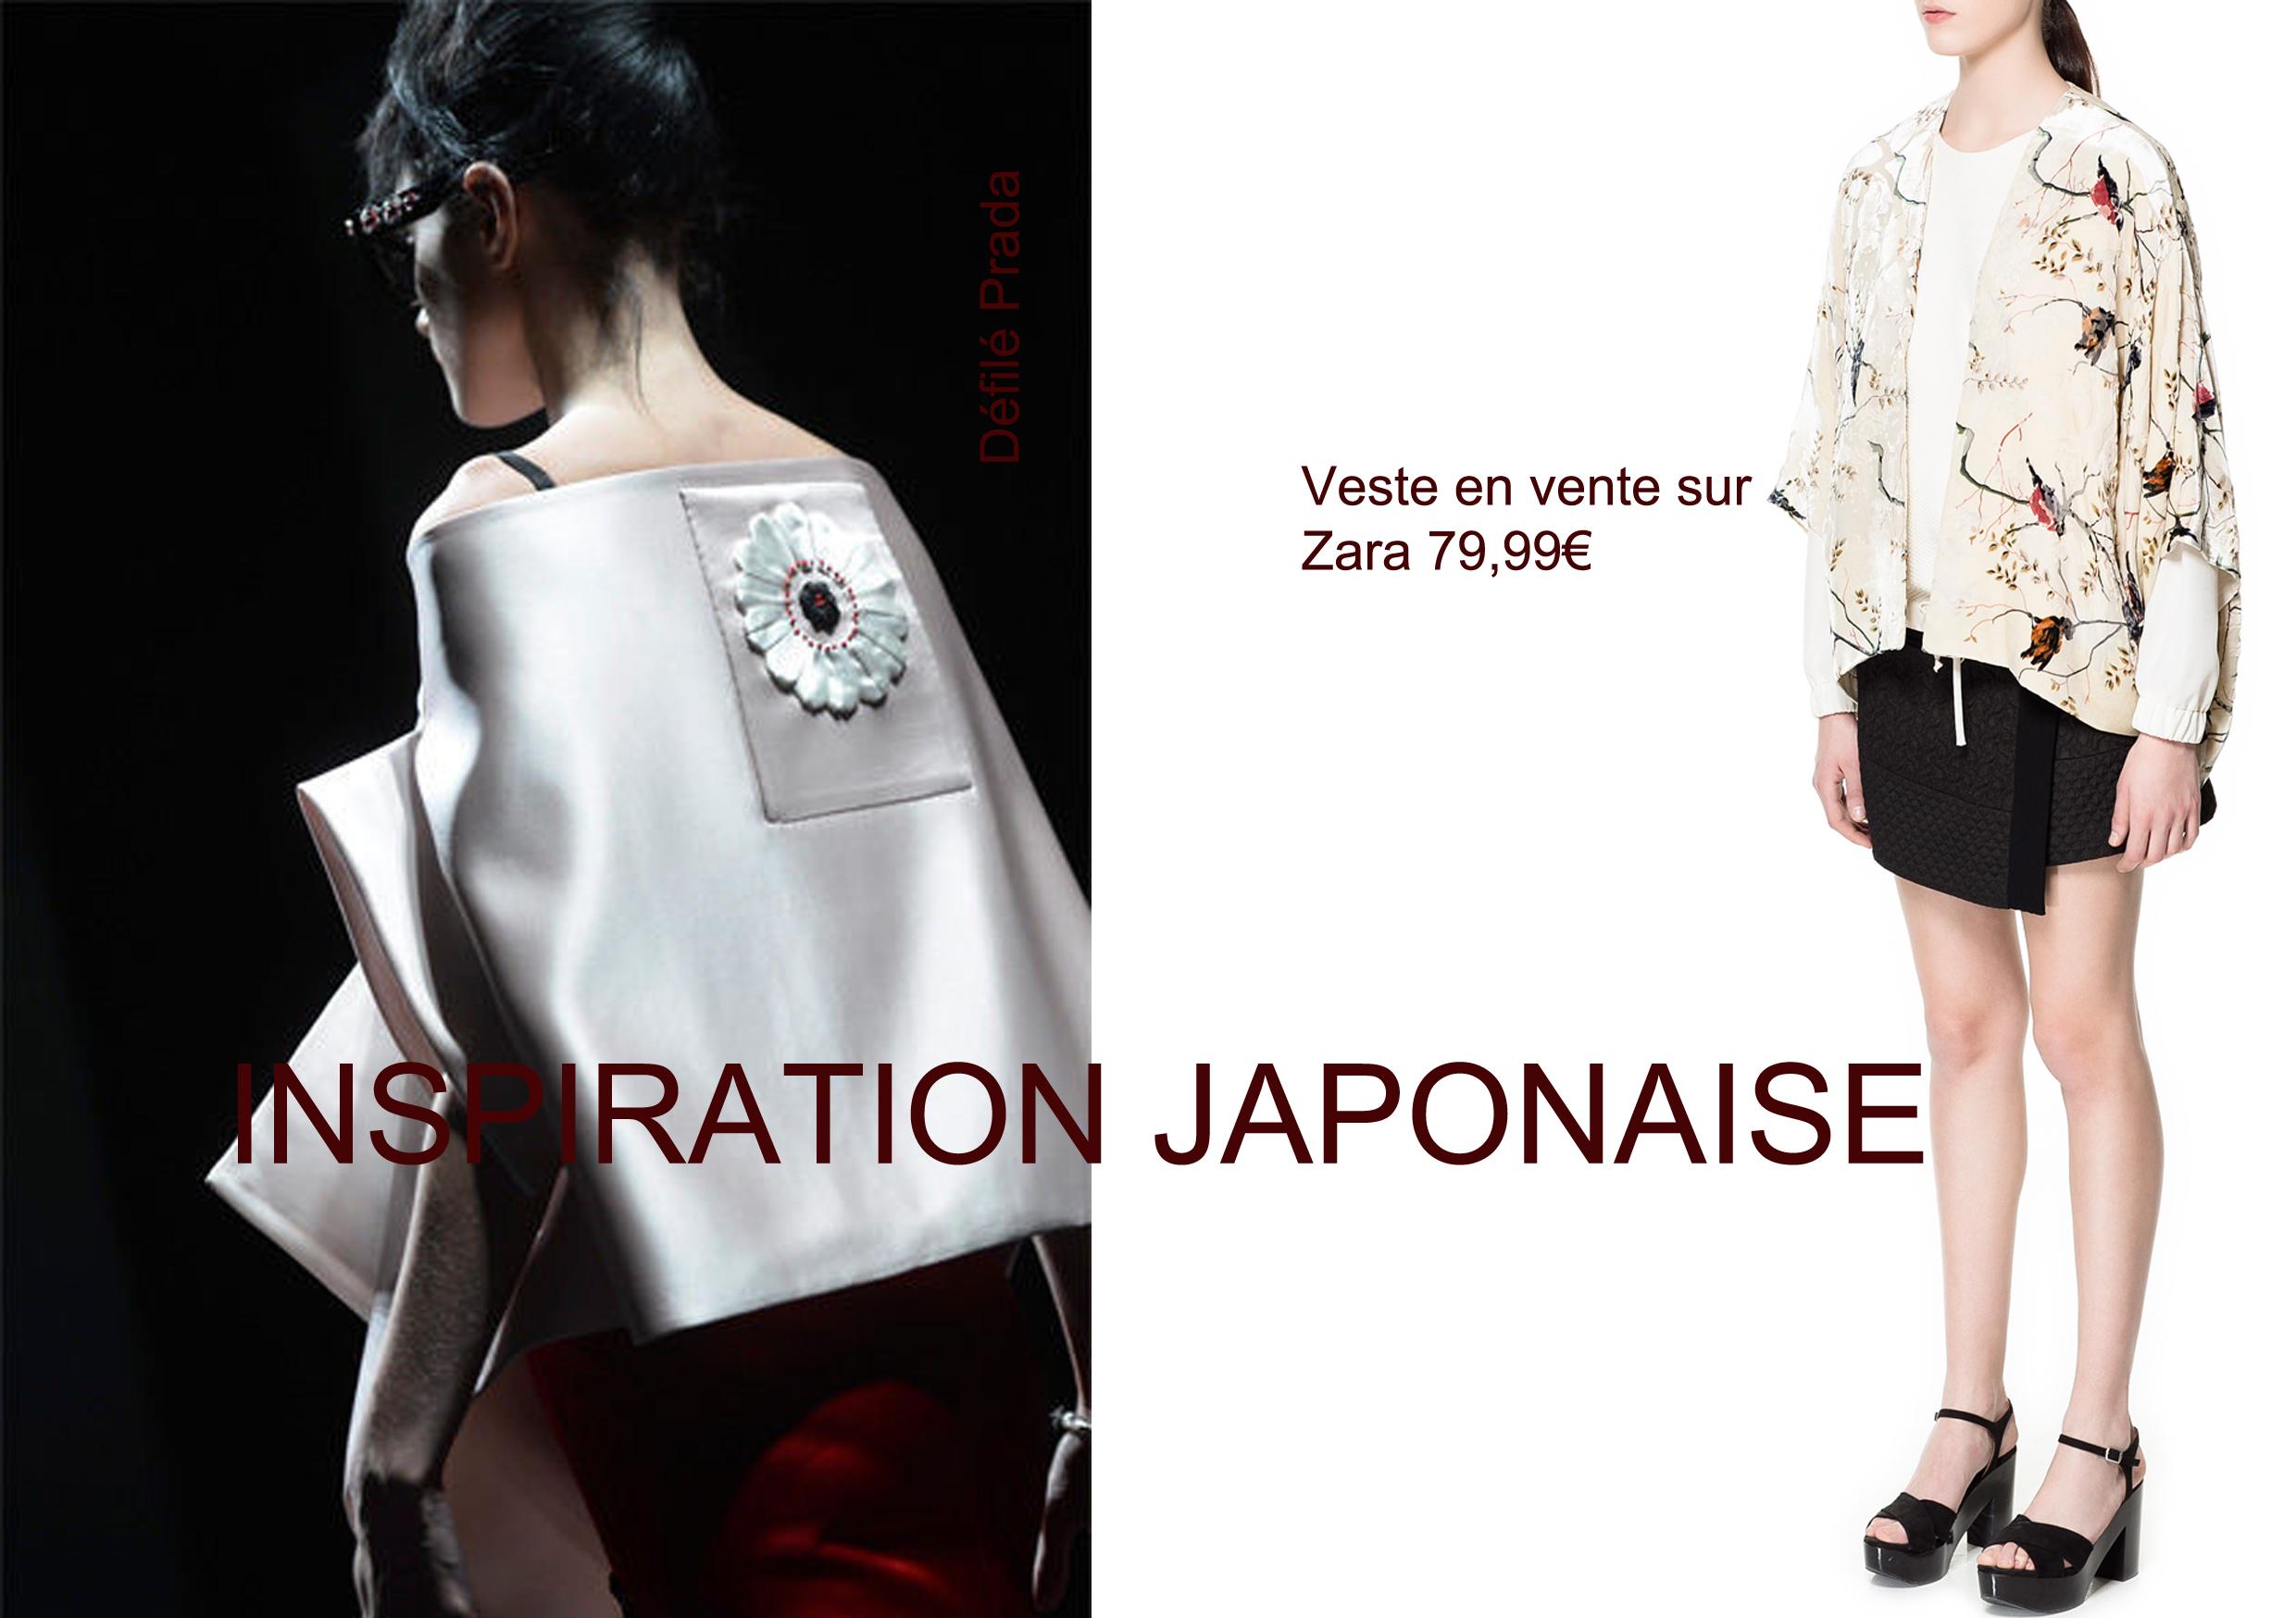 sélection shopping mars 2013, mode femme, tendance printemps, inspiration japonaise,